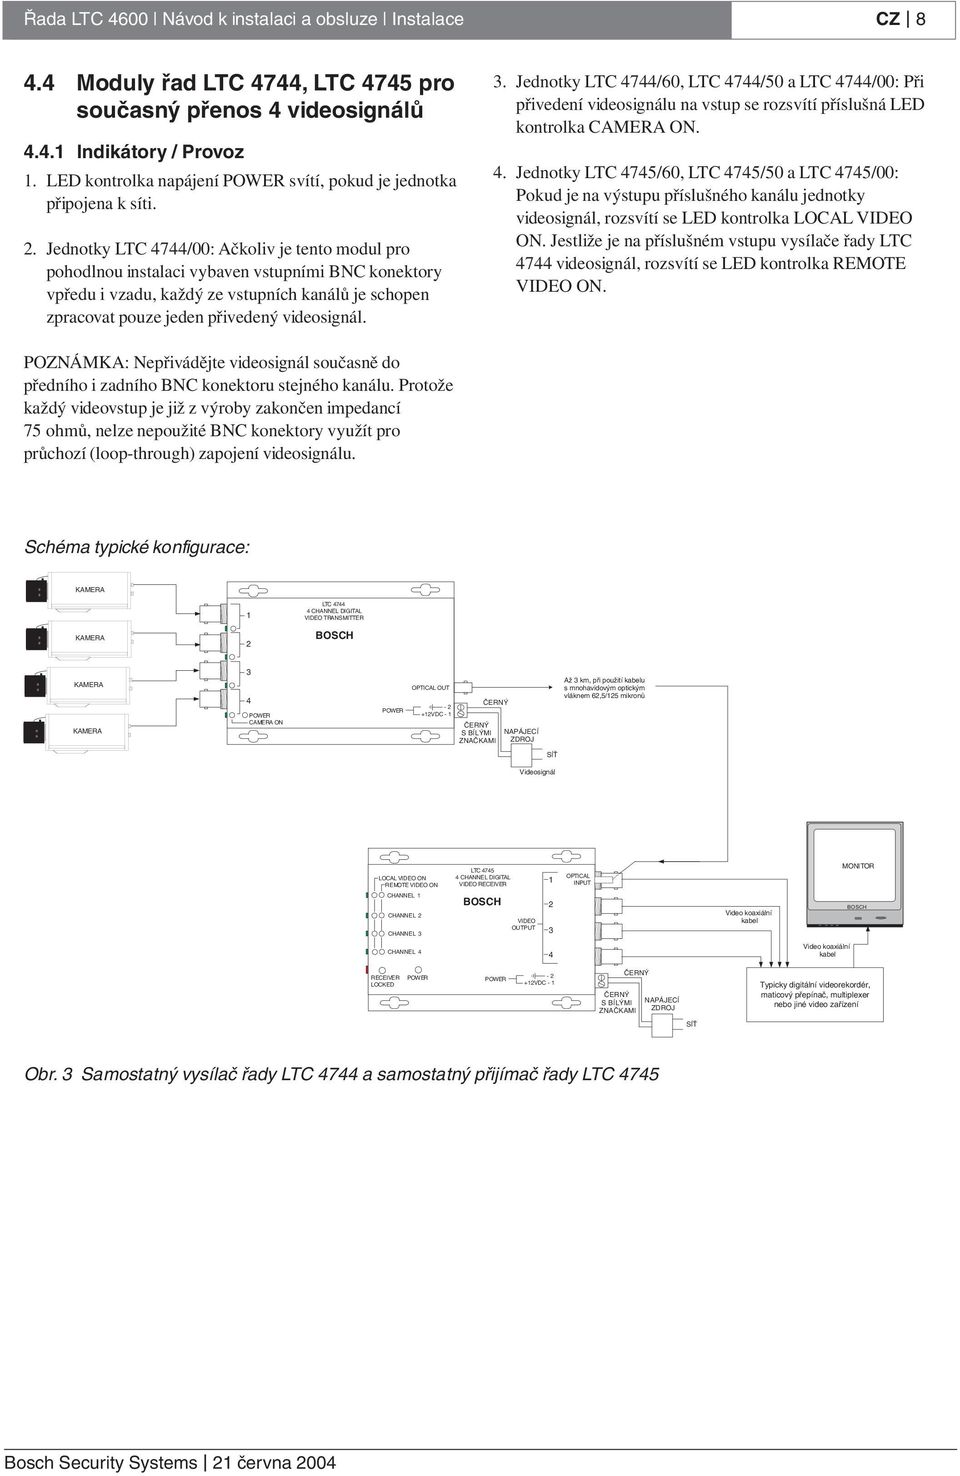 Jednotky LTC 4744/00: Ačkoliv je tento modul pro pohodlnou instalaci vybaven vstupními BNC konektory vpředu i vzadu, každý ze vstupních kanálů je schopen zpracovat pouze jeden přivedený videosignál.